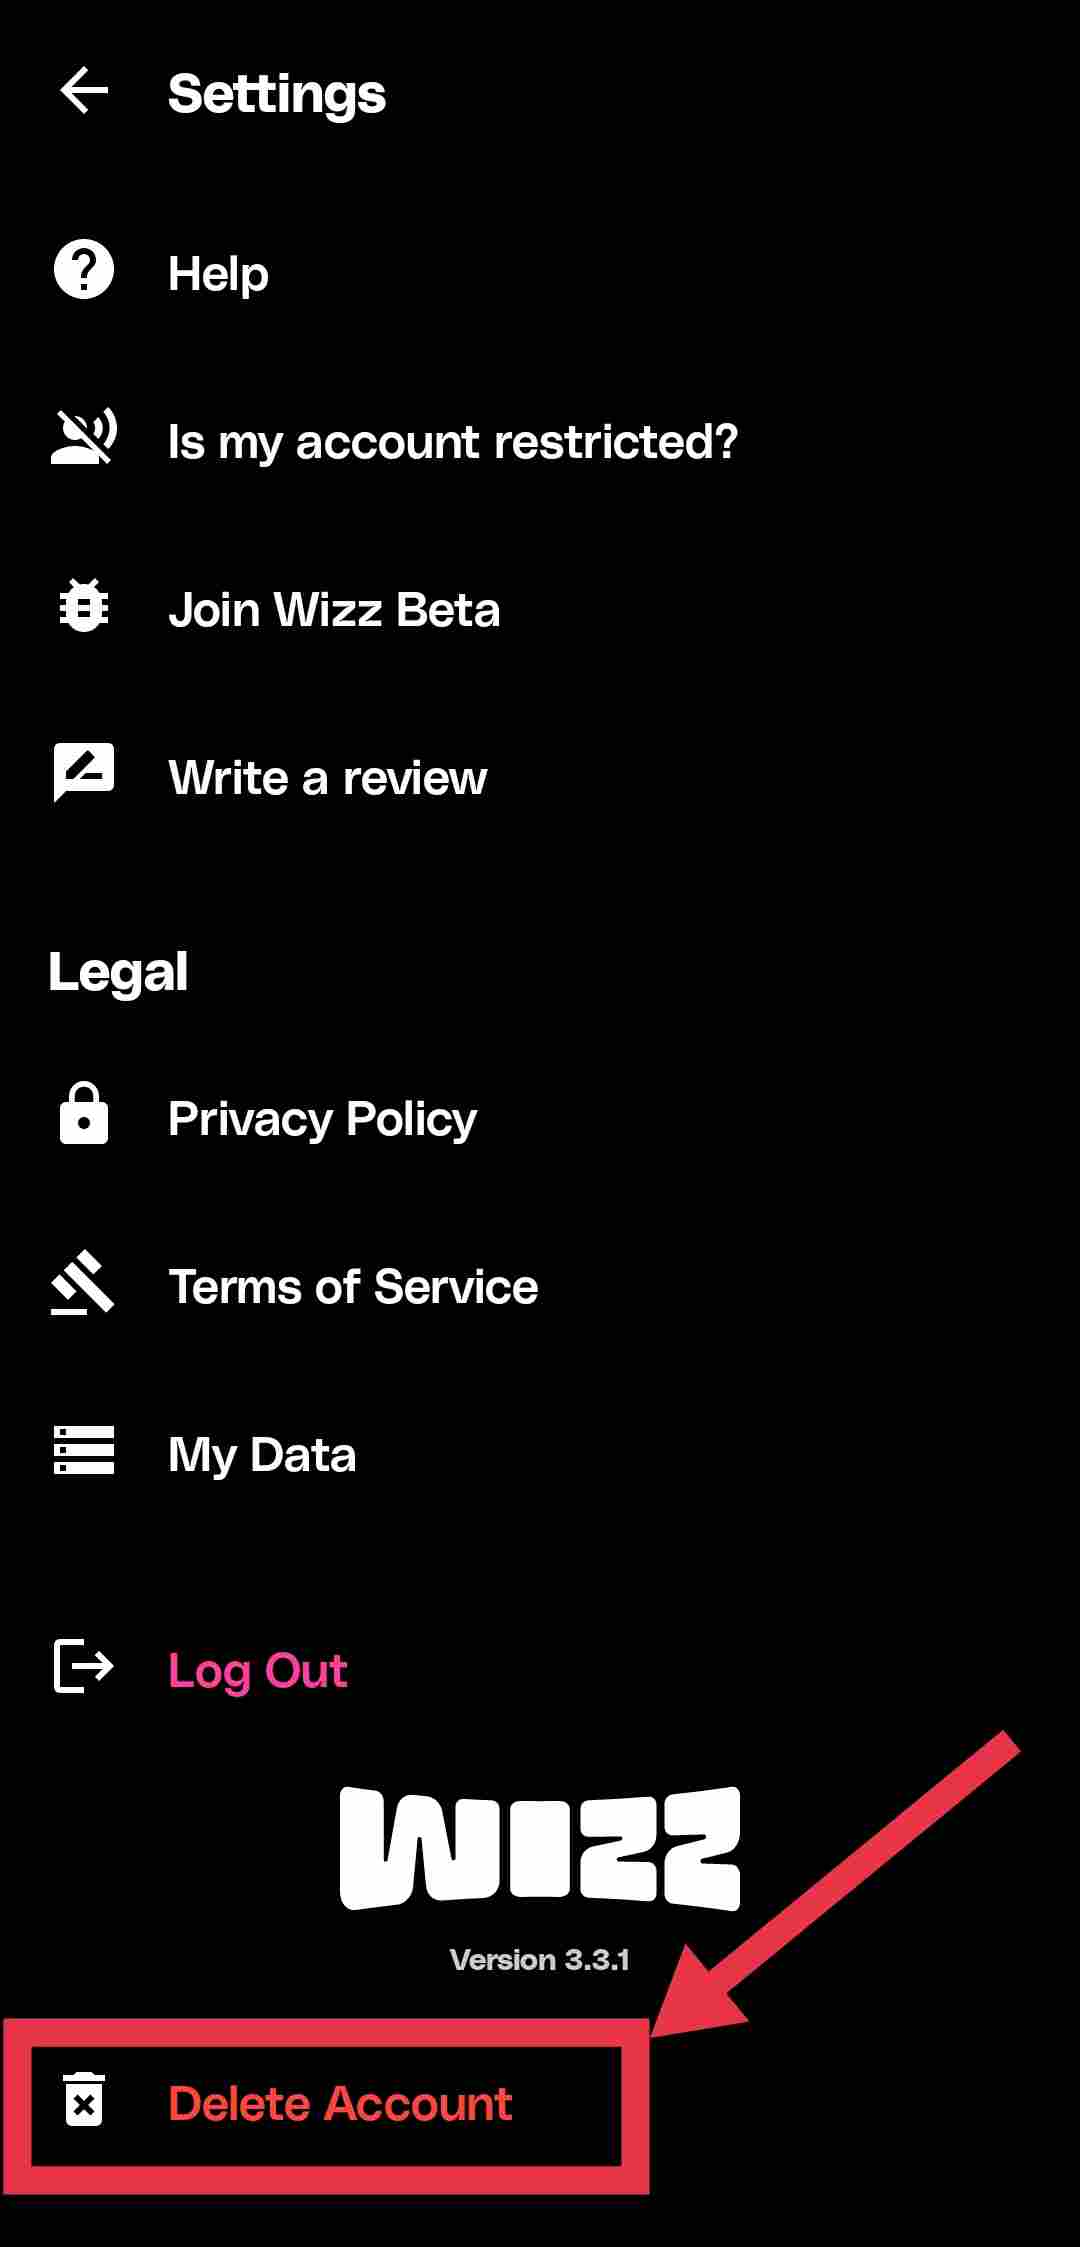 Wizz app delete account option